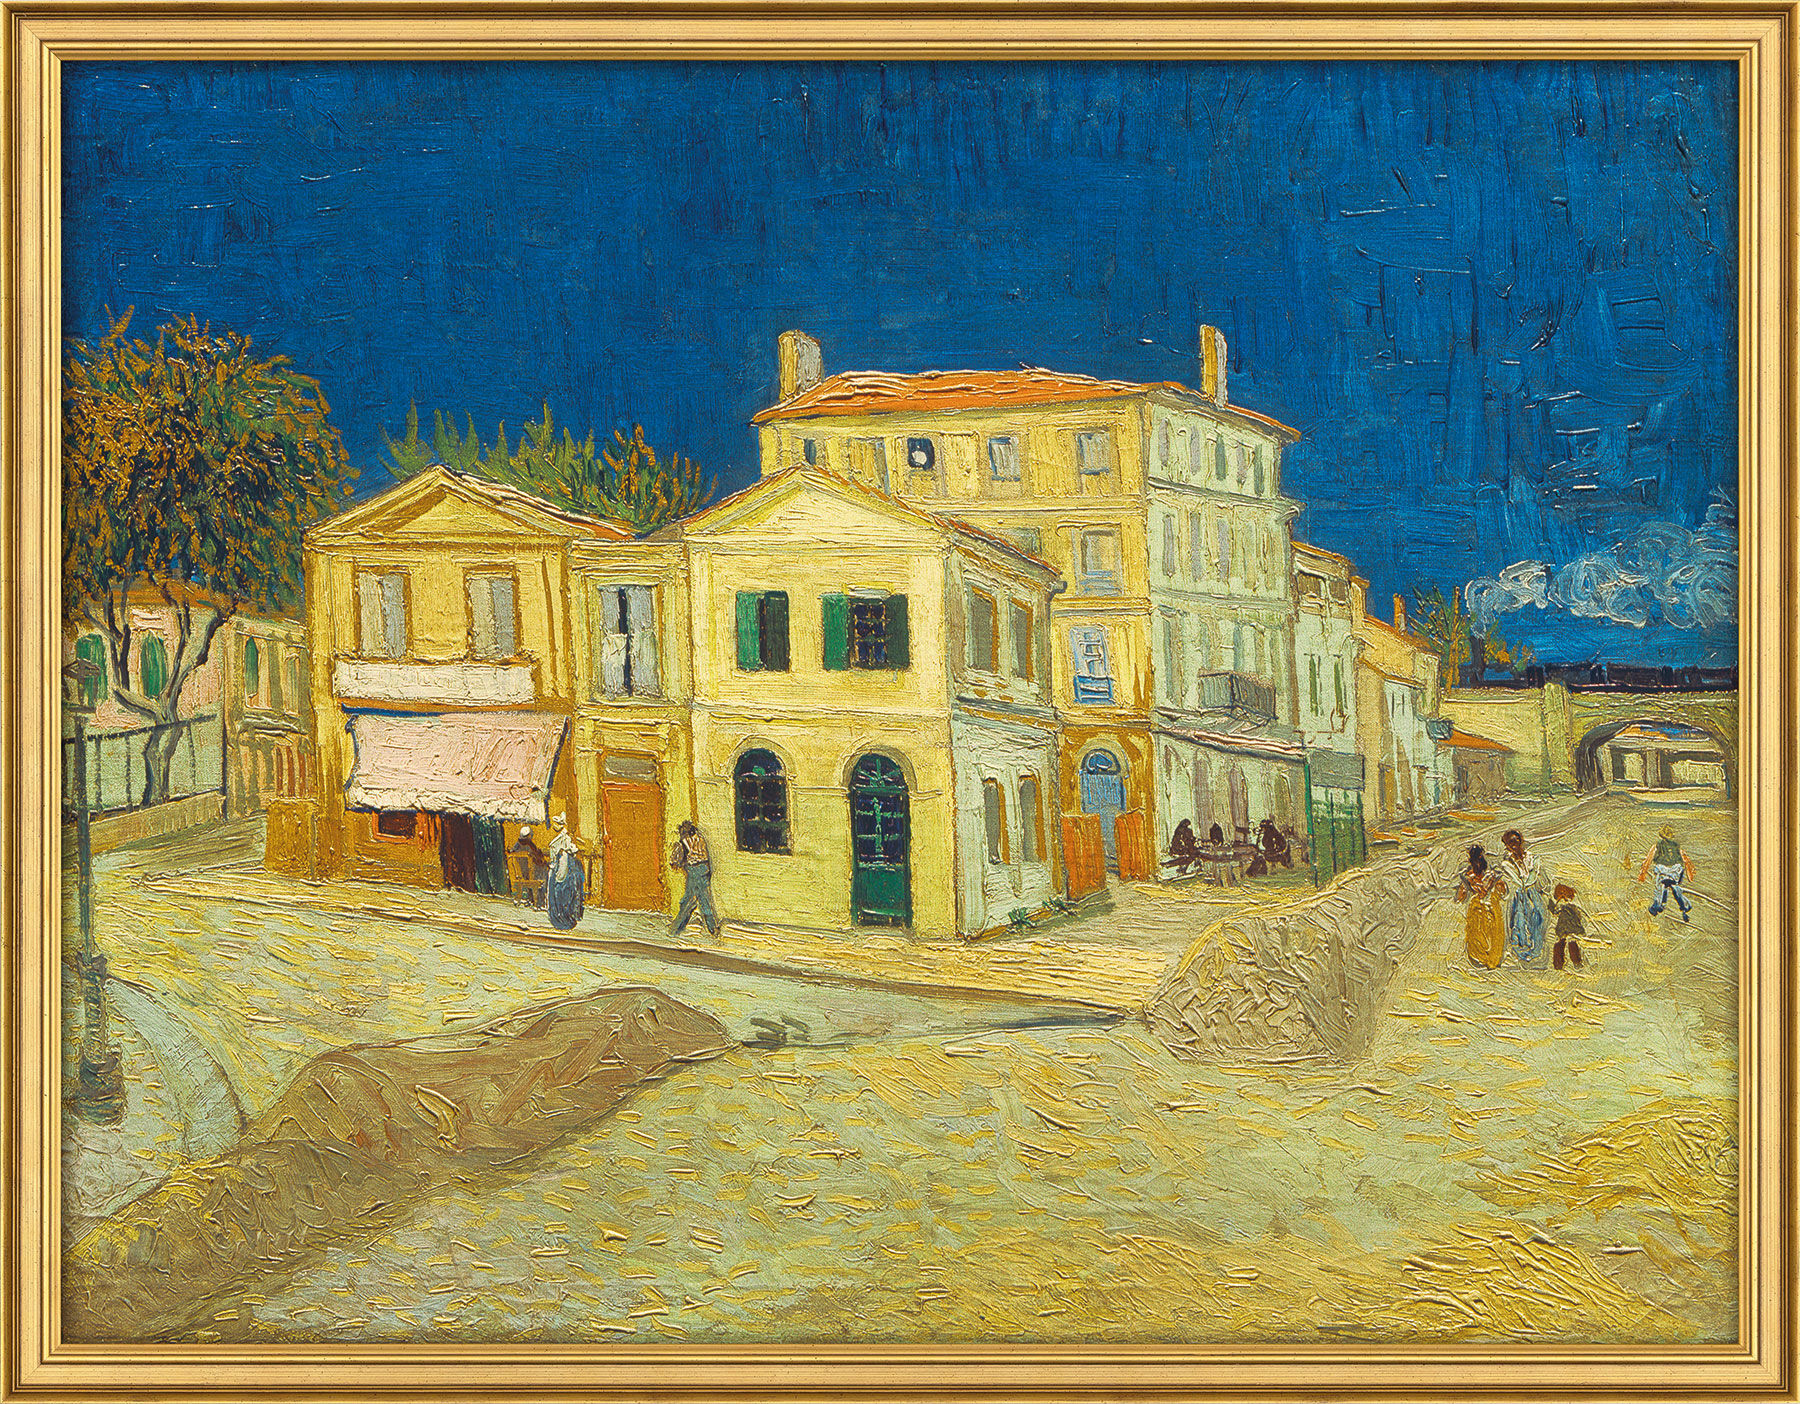 Tableau "La maison jaune" (1888), encadré von Vincent van Gogh